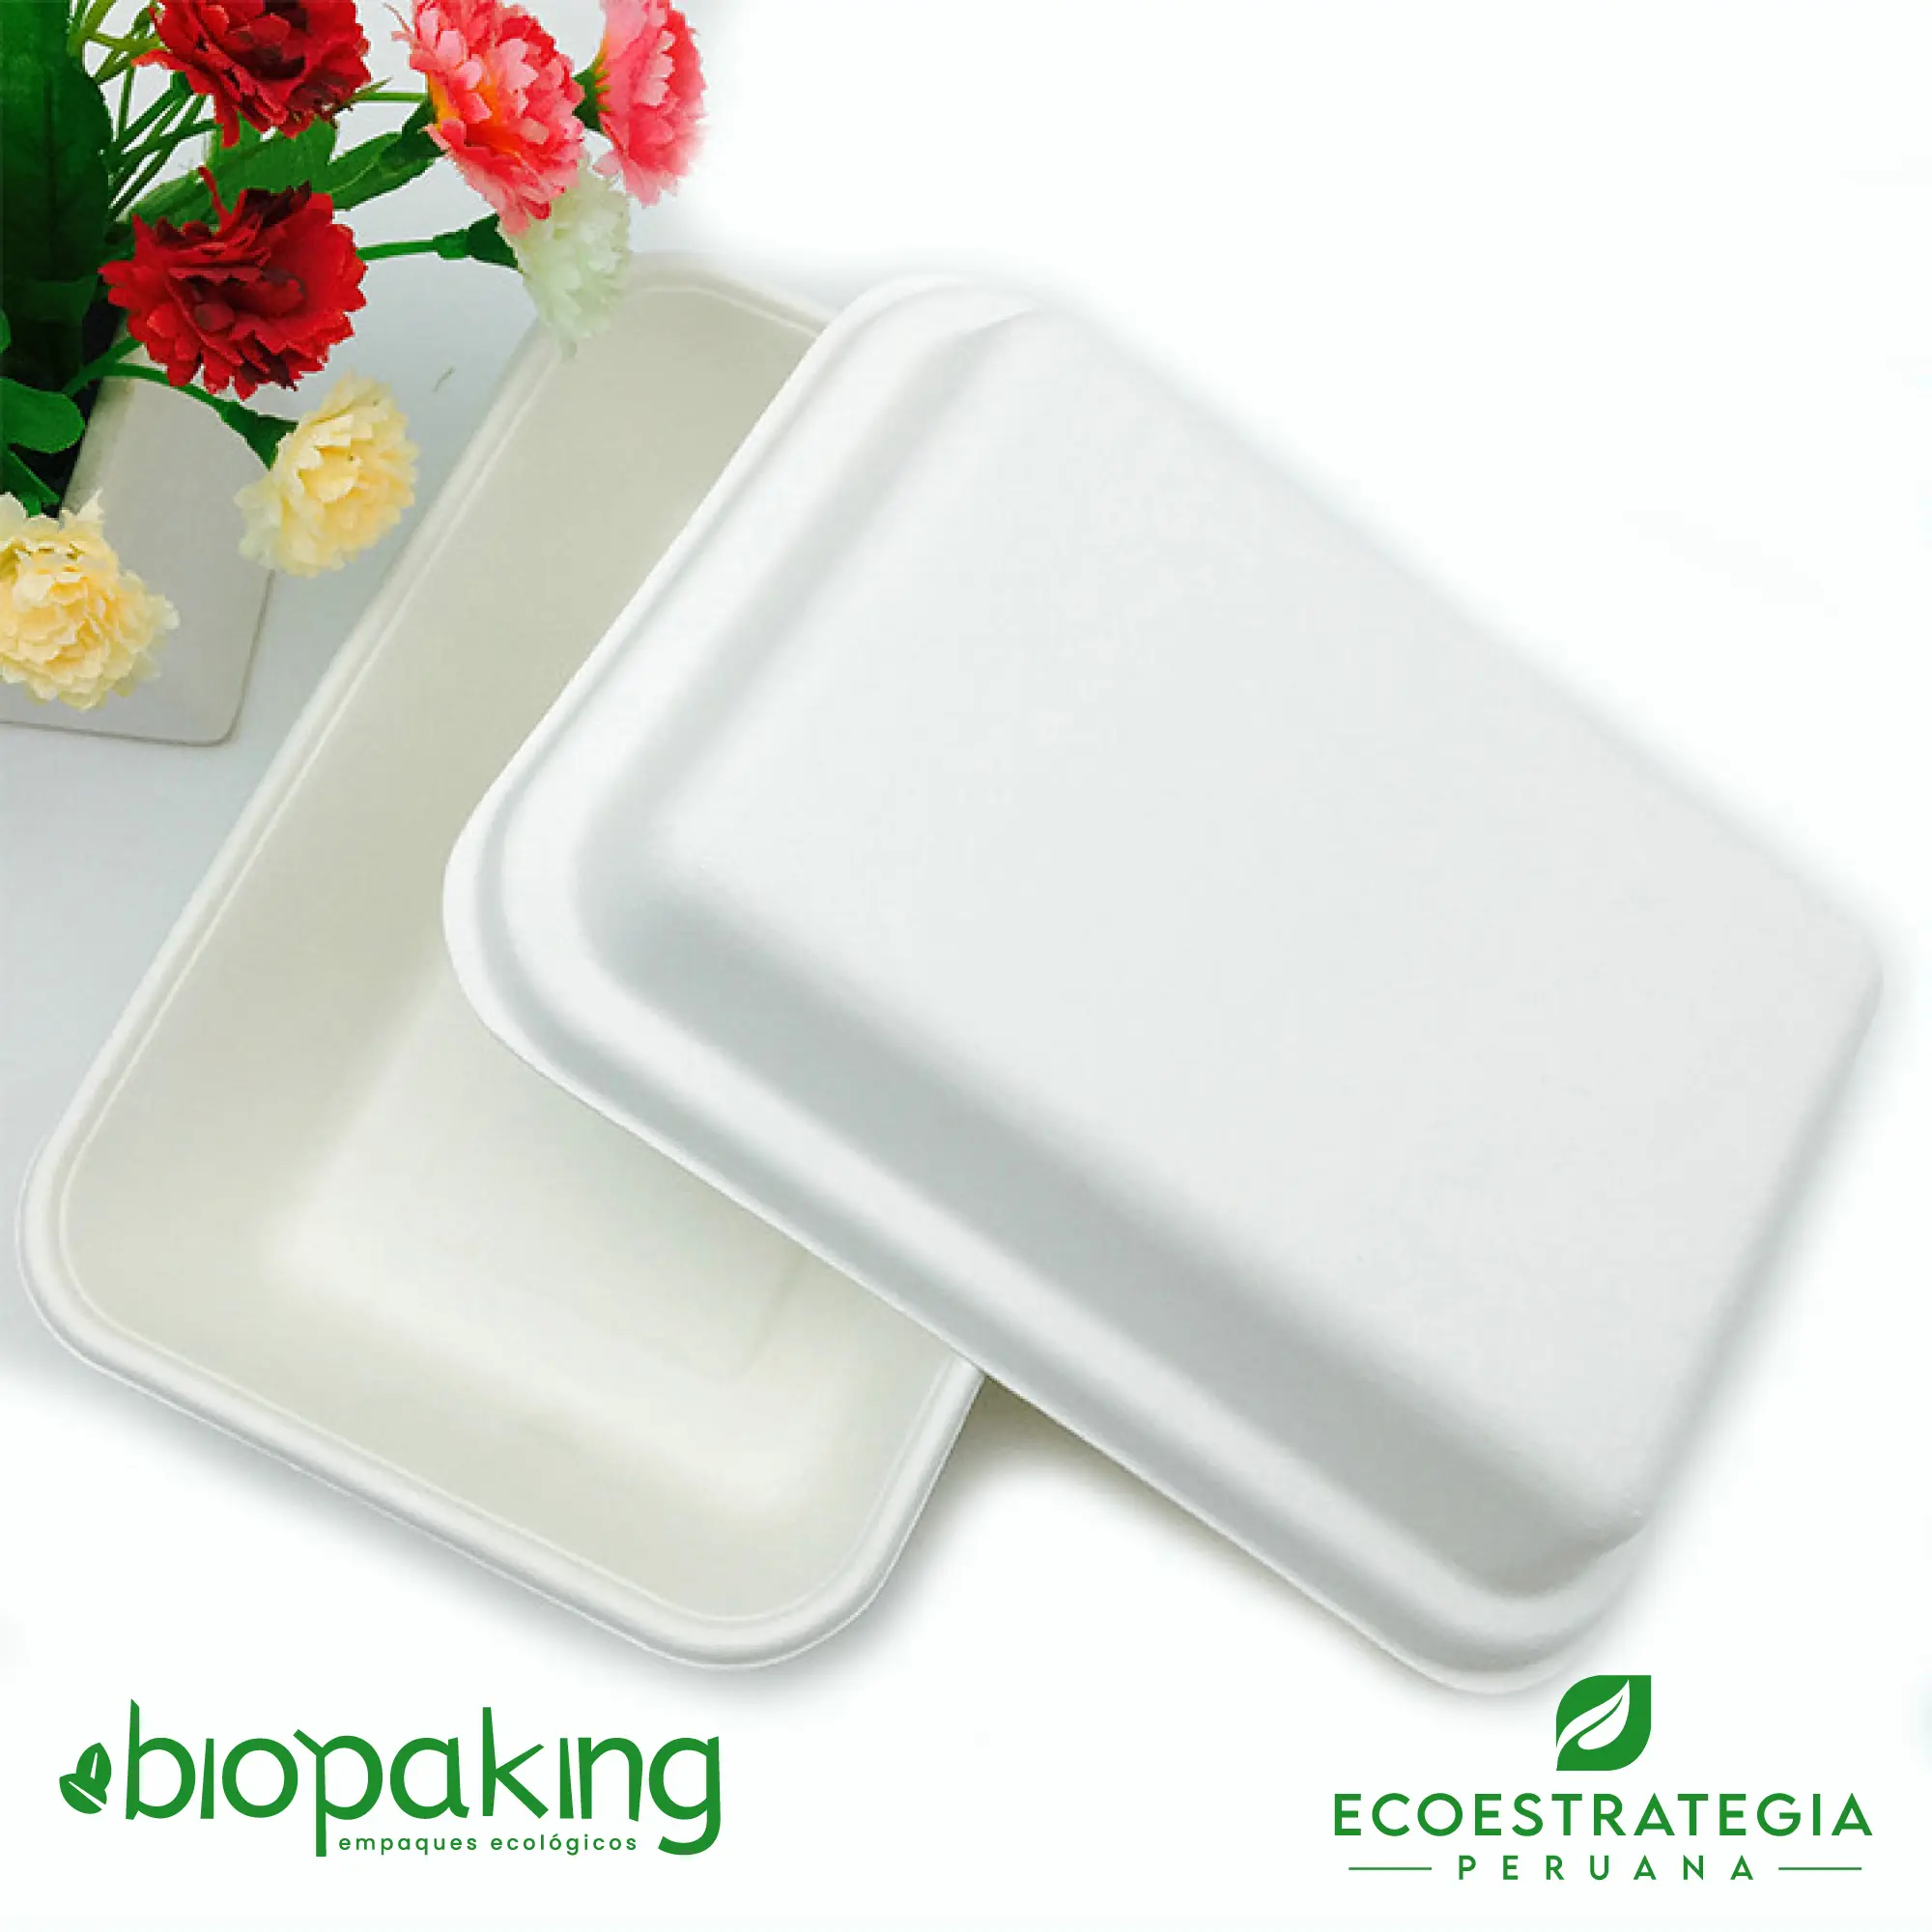 Esta bandeja biodegradable PB2 es a base de caña de azúcar. Envases descartables con gramaje ideal, cotiza tus bandejas, empaques, platos y  tapers ecológicos